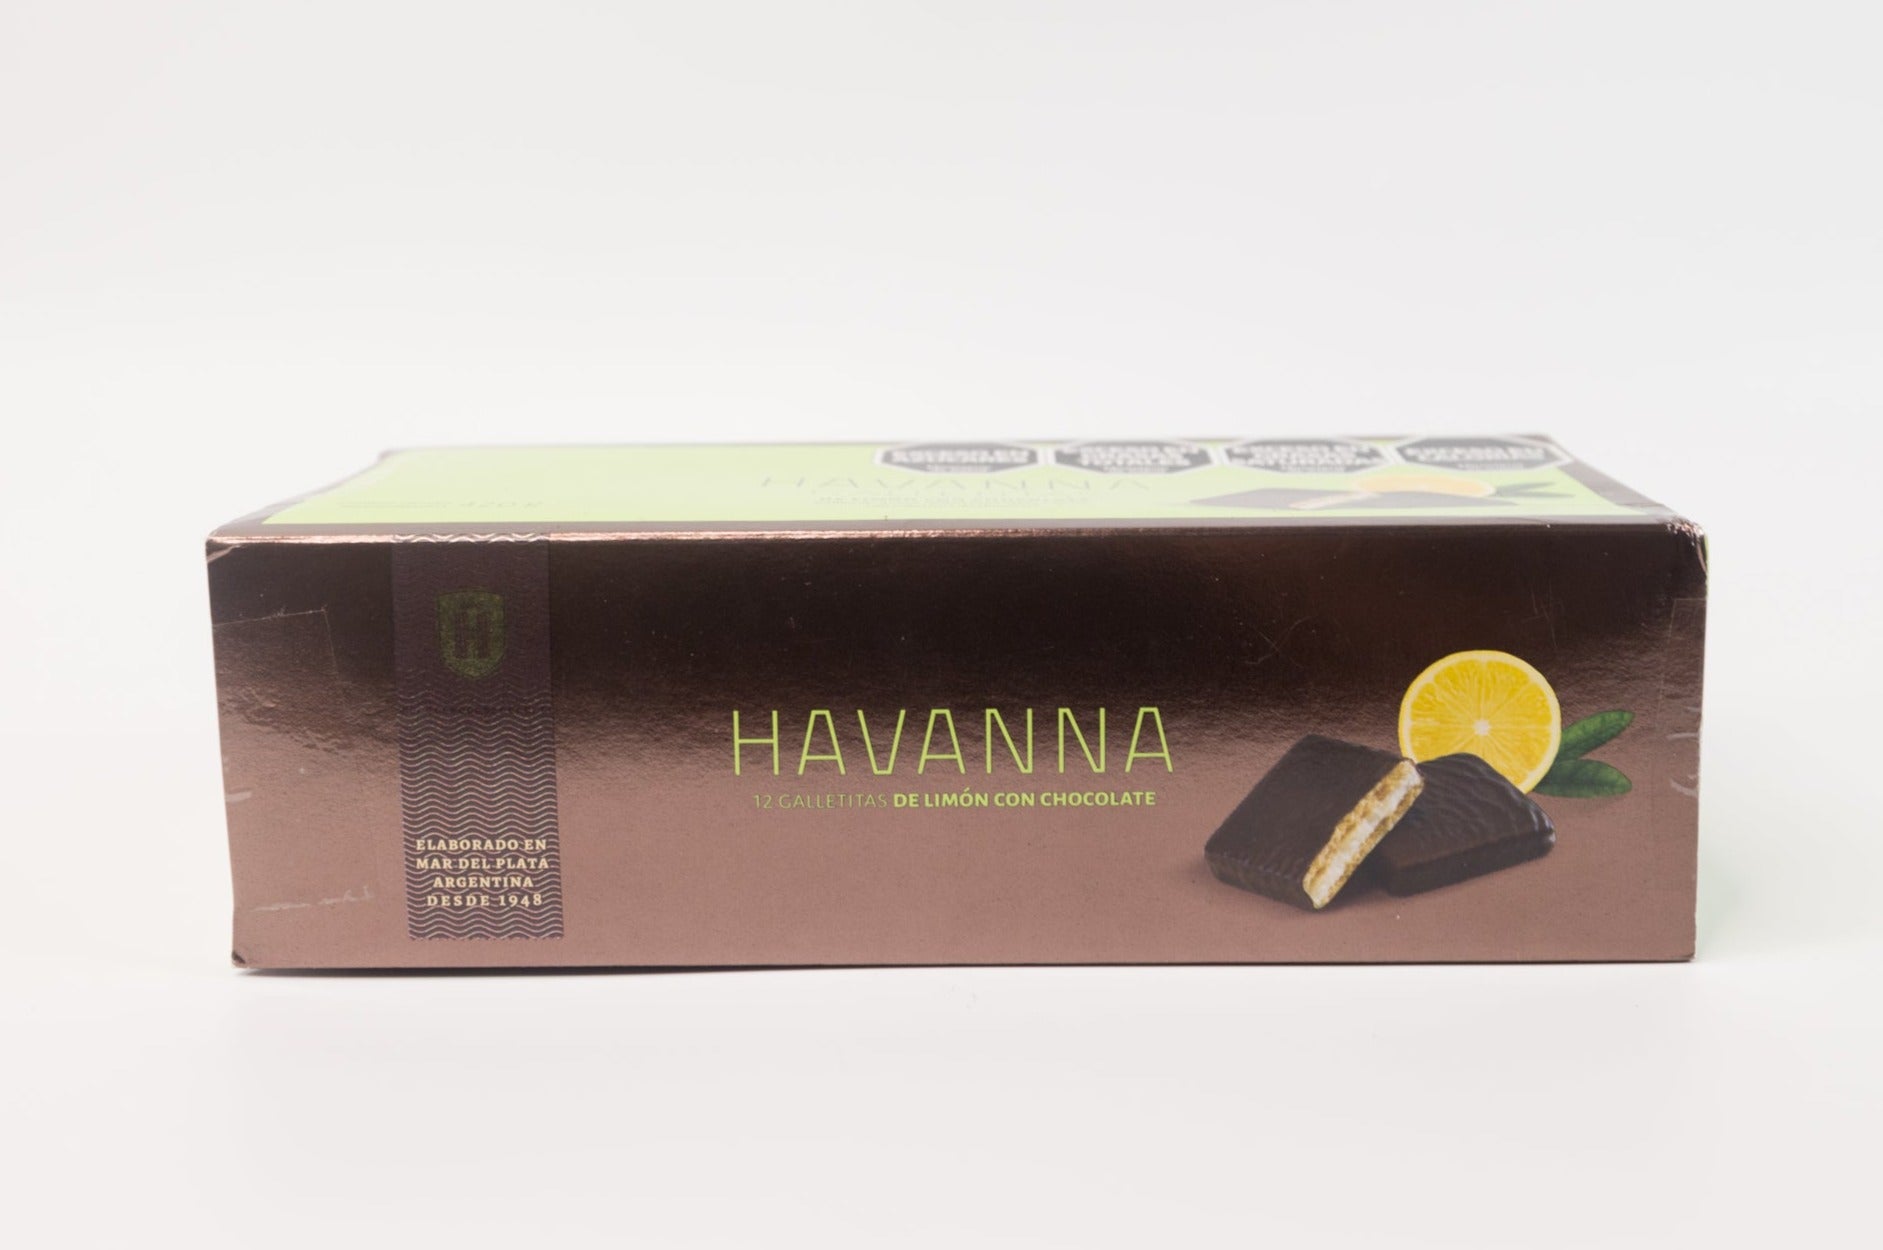 Havanna Galletitas de Limon con Chocolate